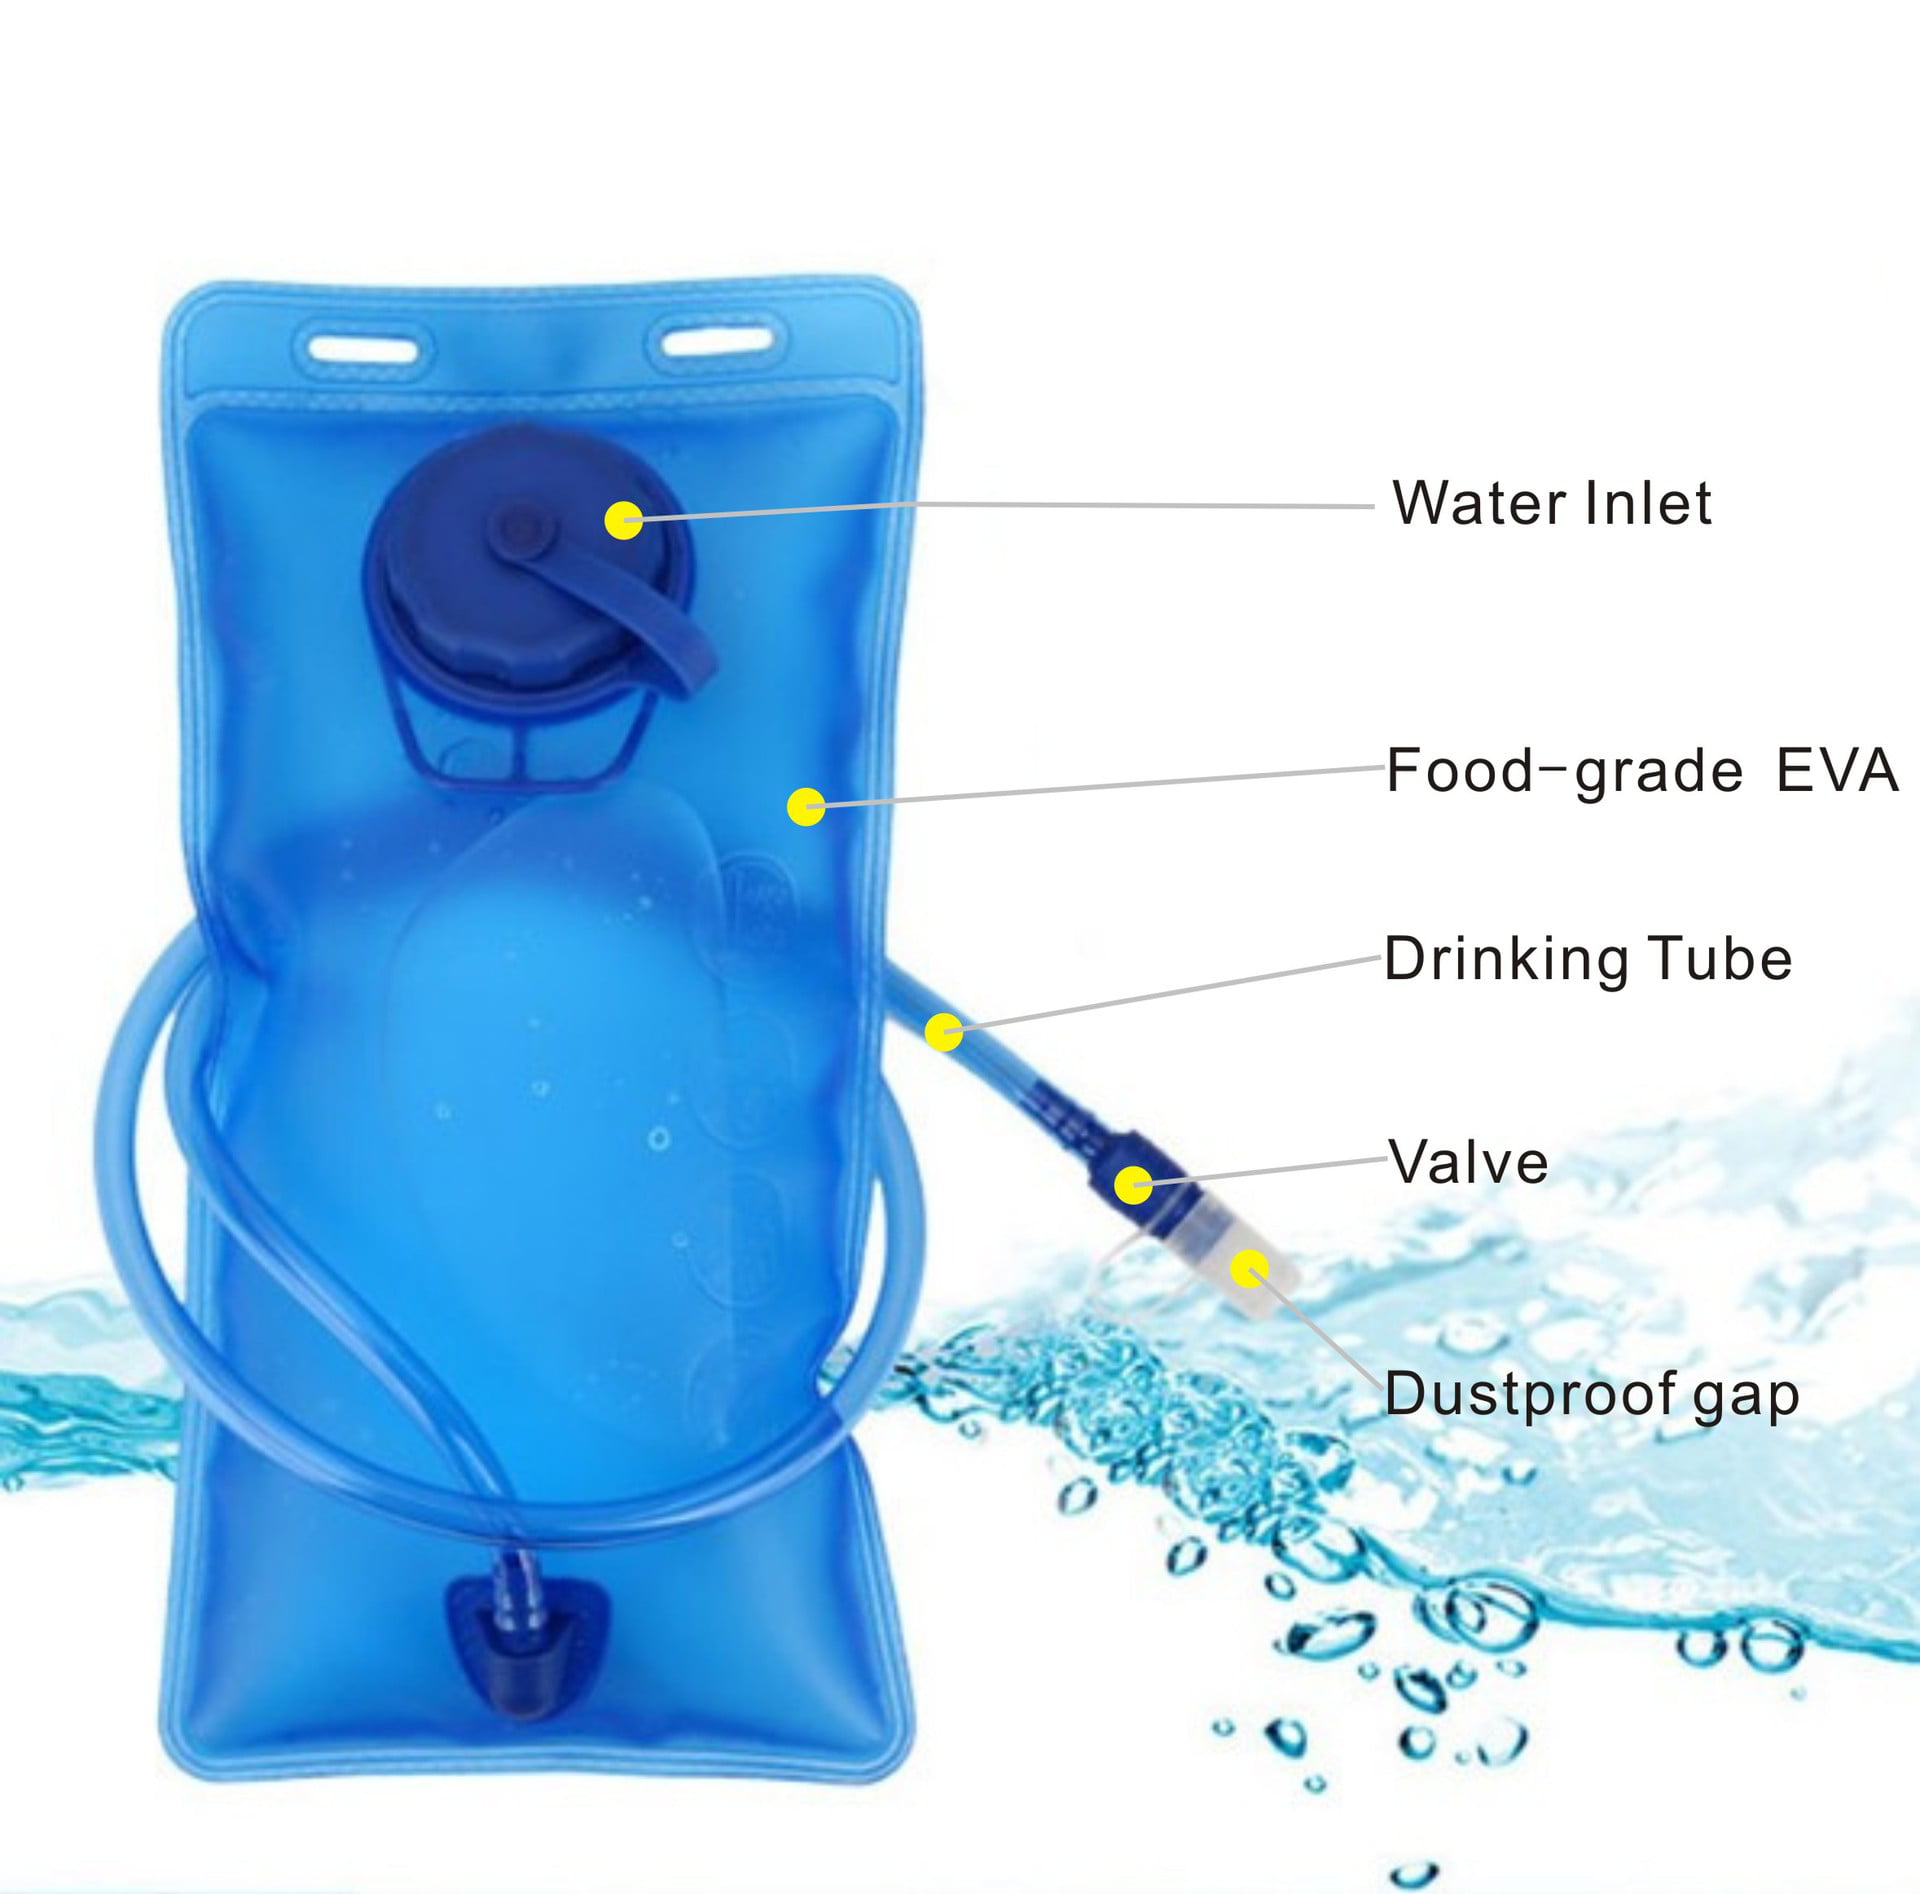 Vayska Bottle Hydration Backpack 2 Liter Bottle with Storage Pocket